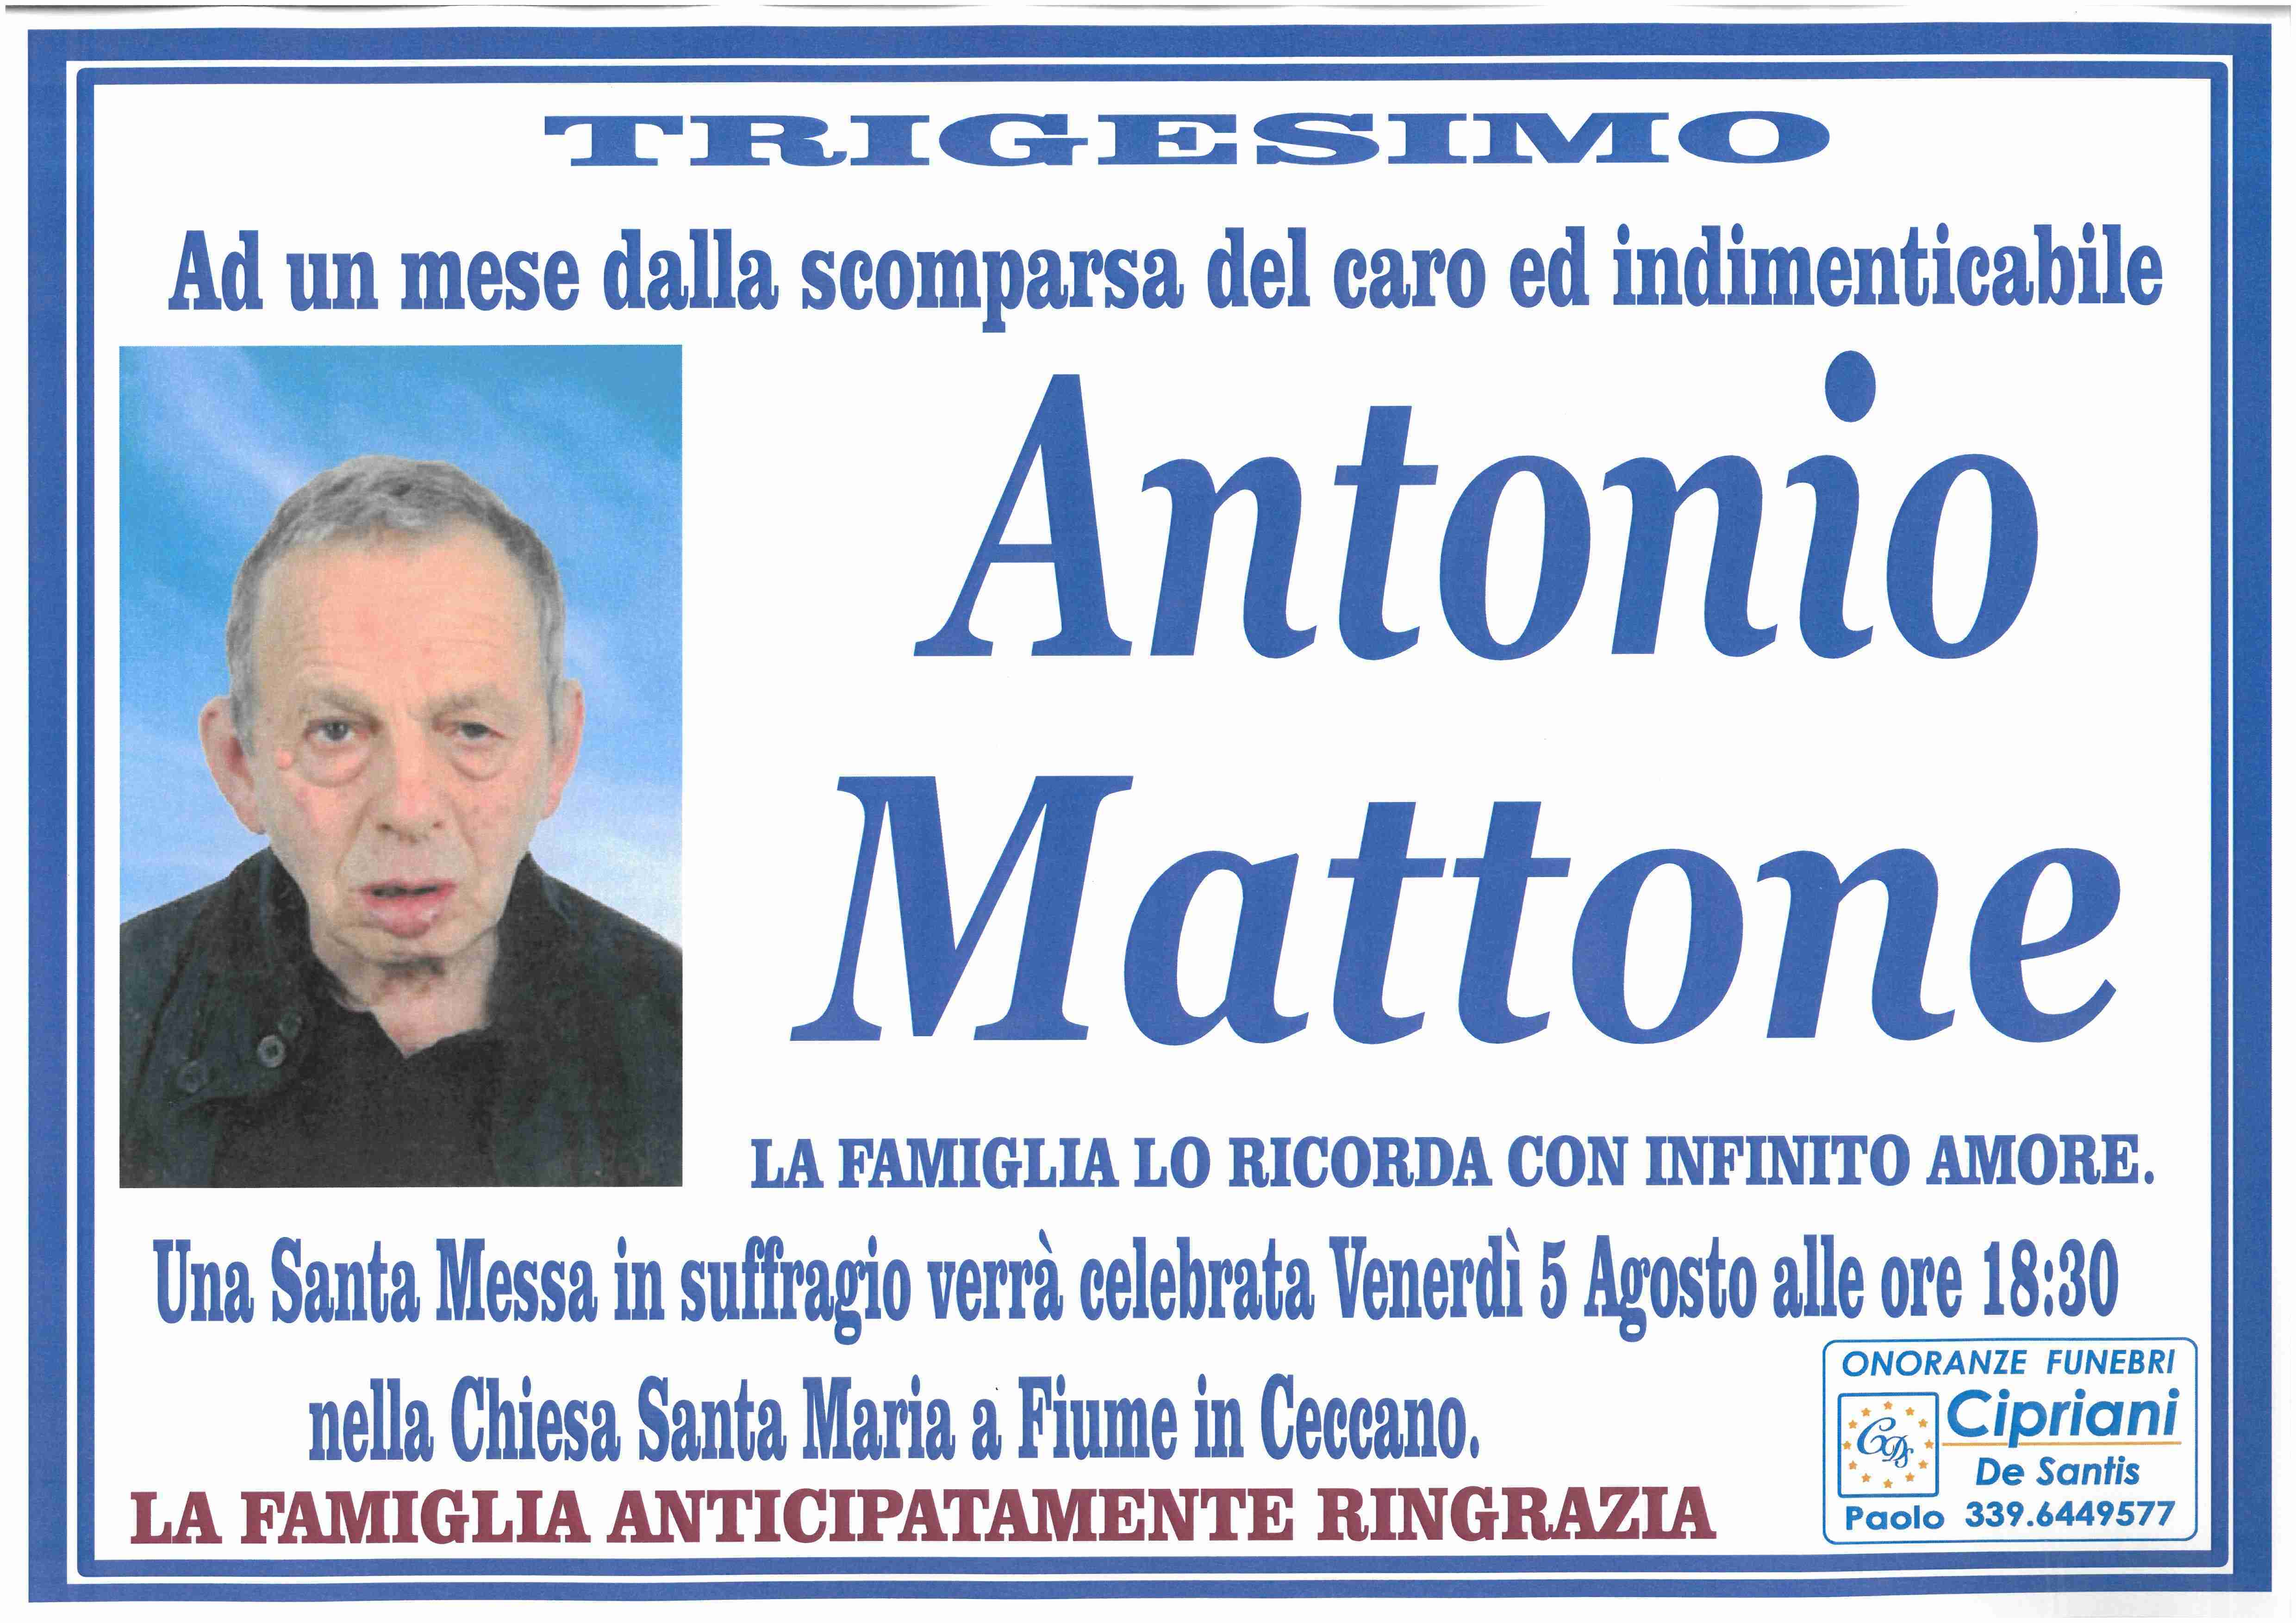 Antonio Mattone